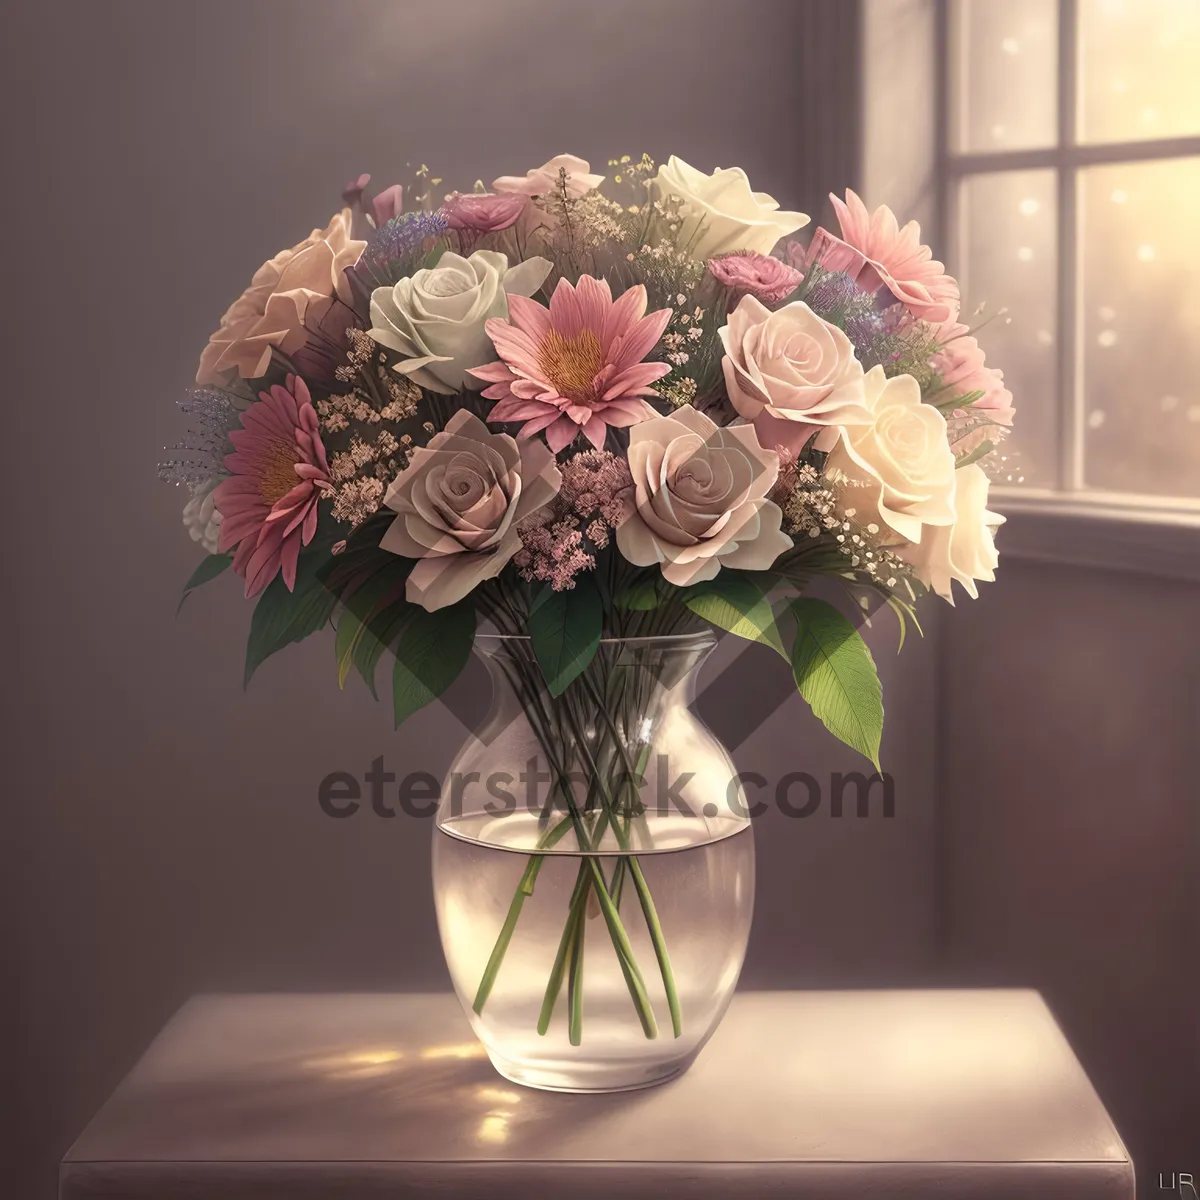 Picture of Elegant Pink Rose Vase Arrangement for Wedding Décor